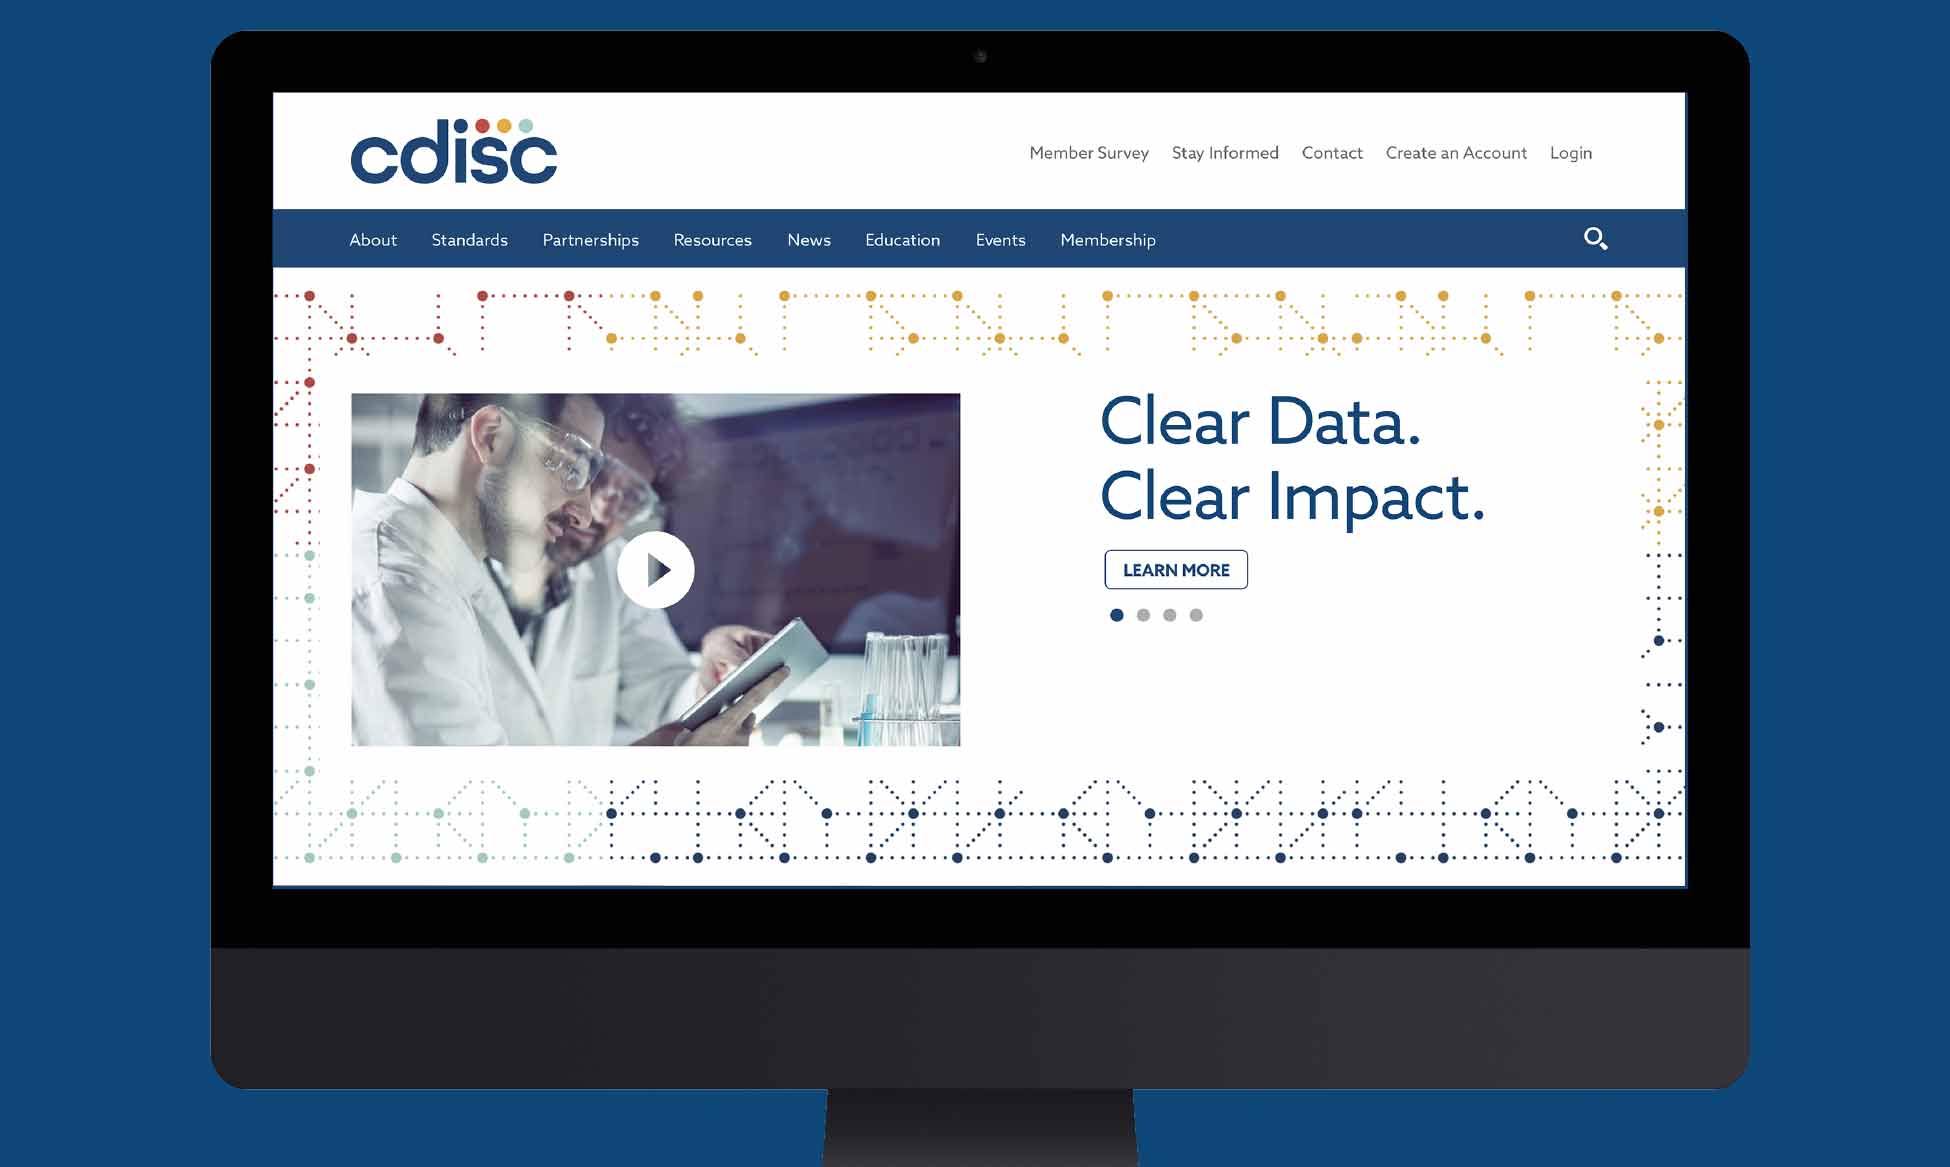 cdisc website design